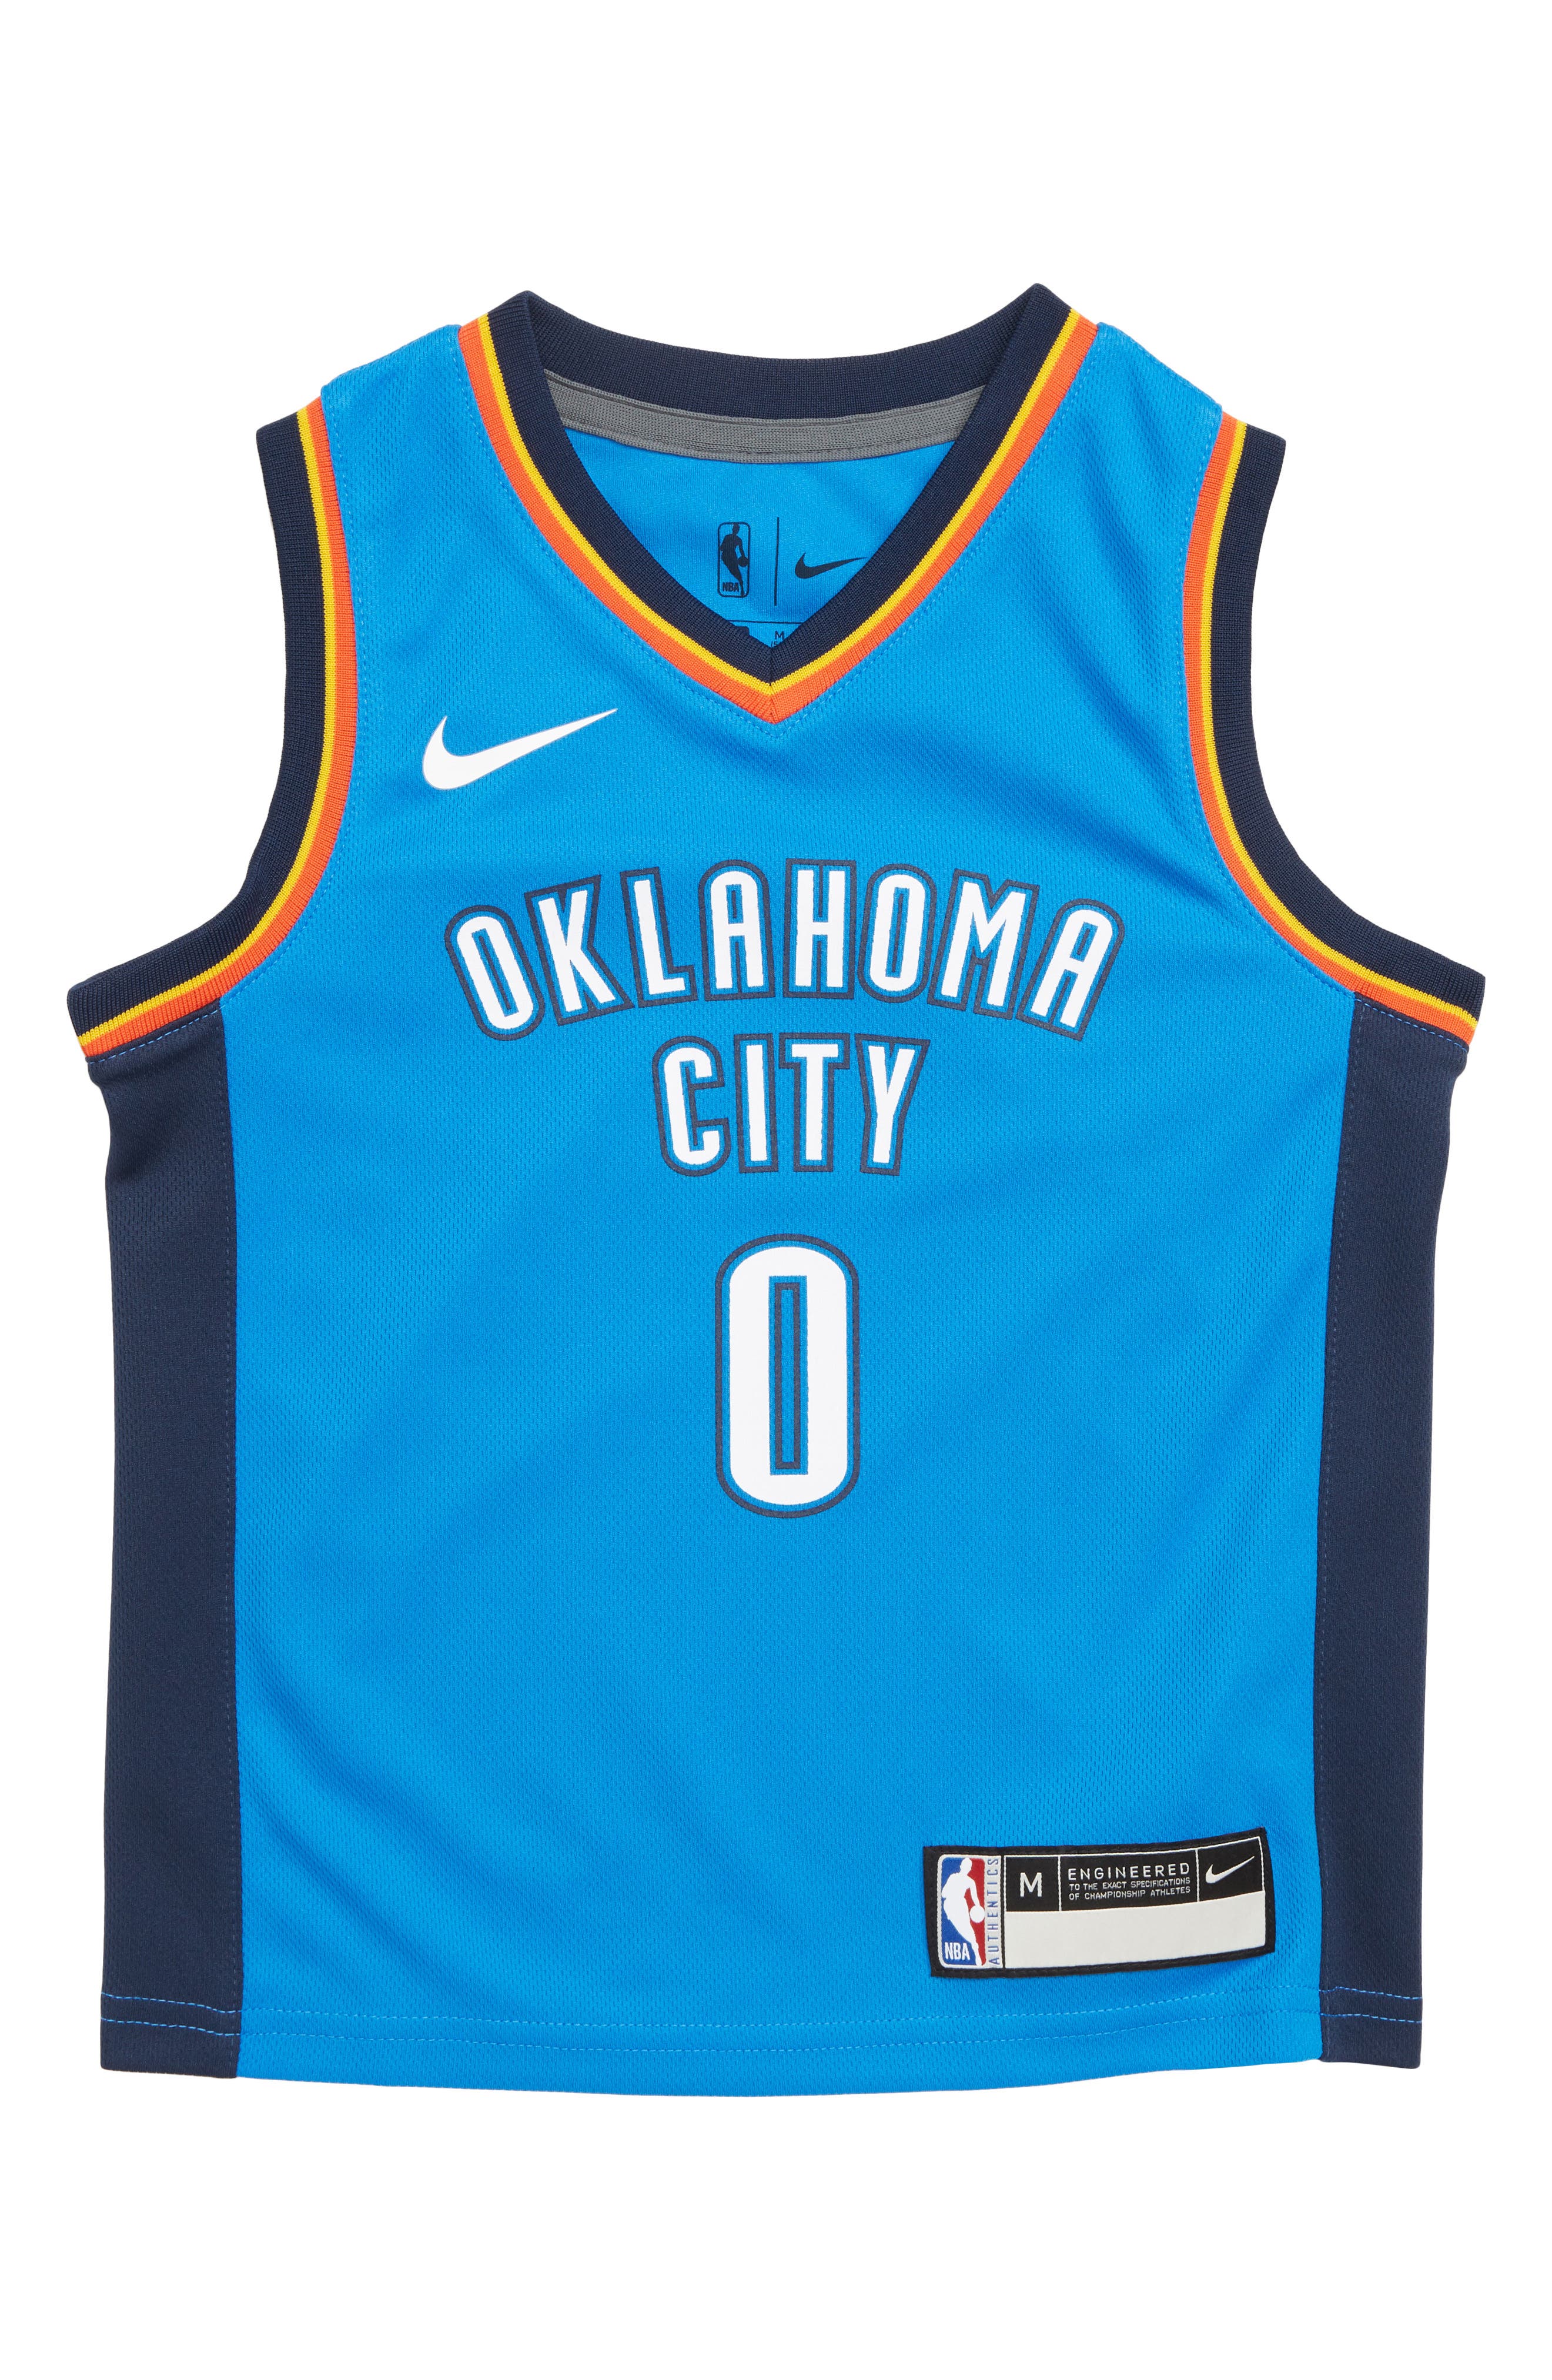 oklahoma city basketball jersey